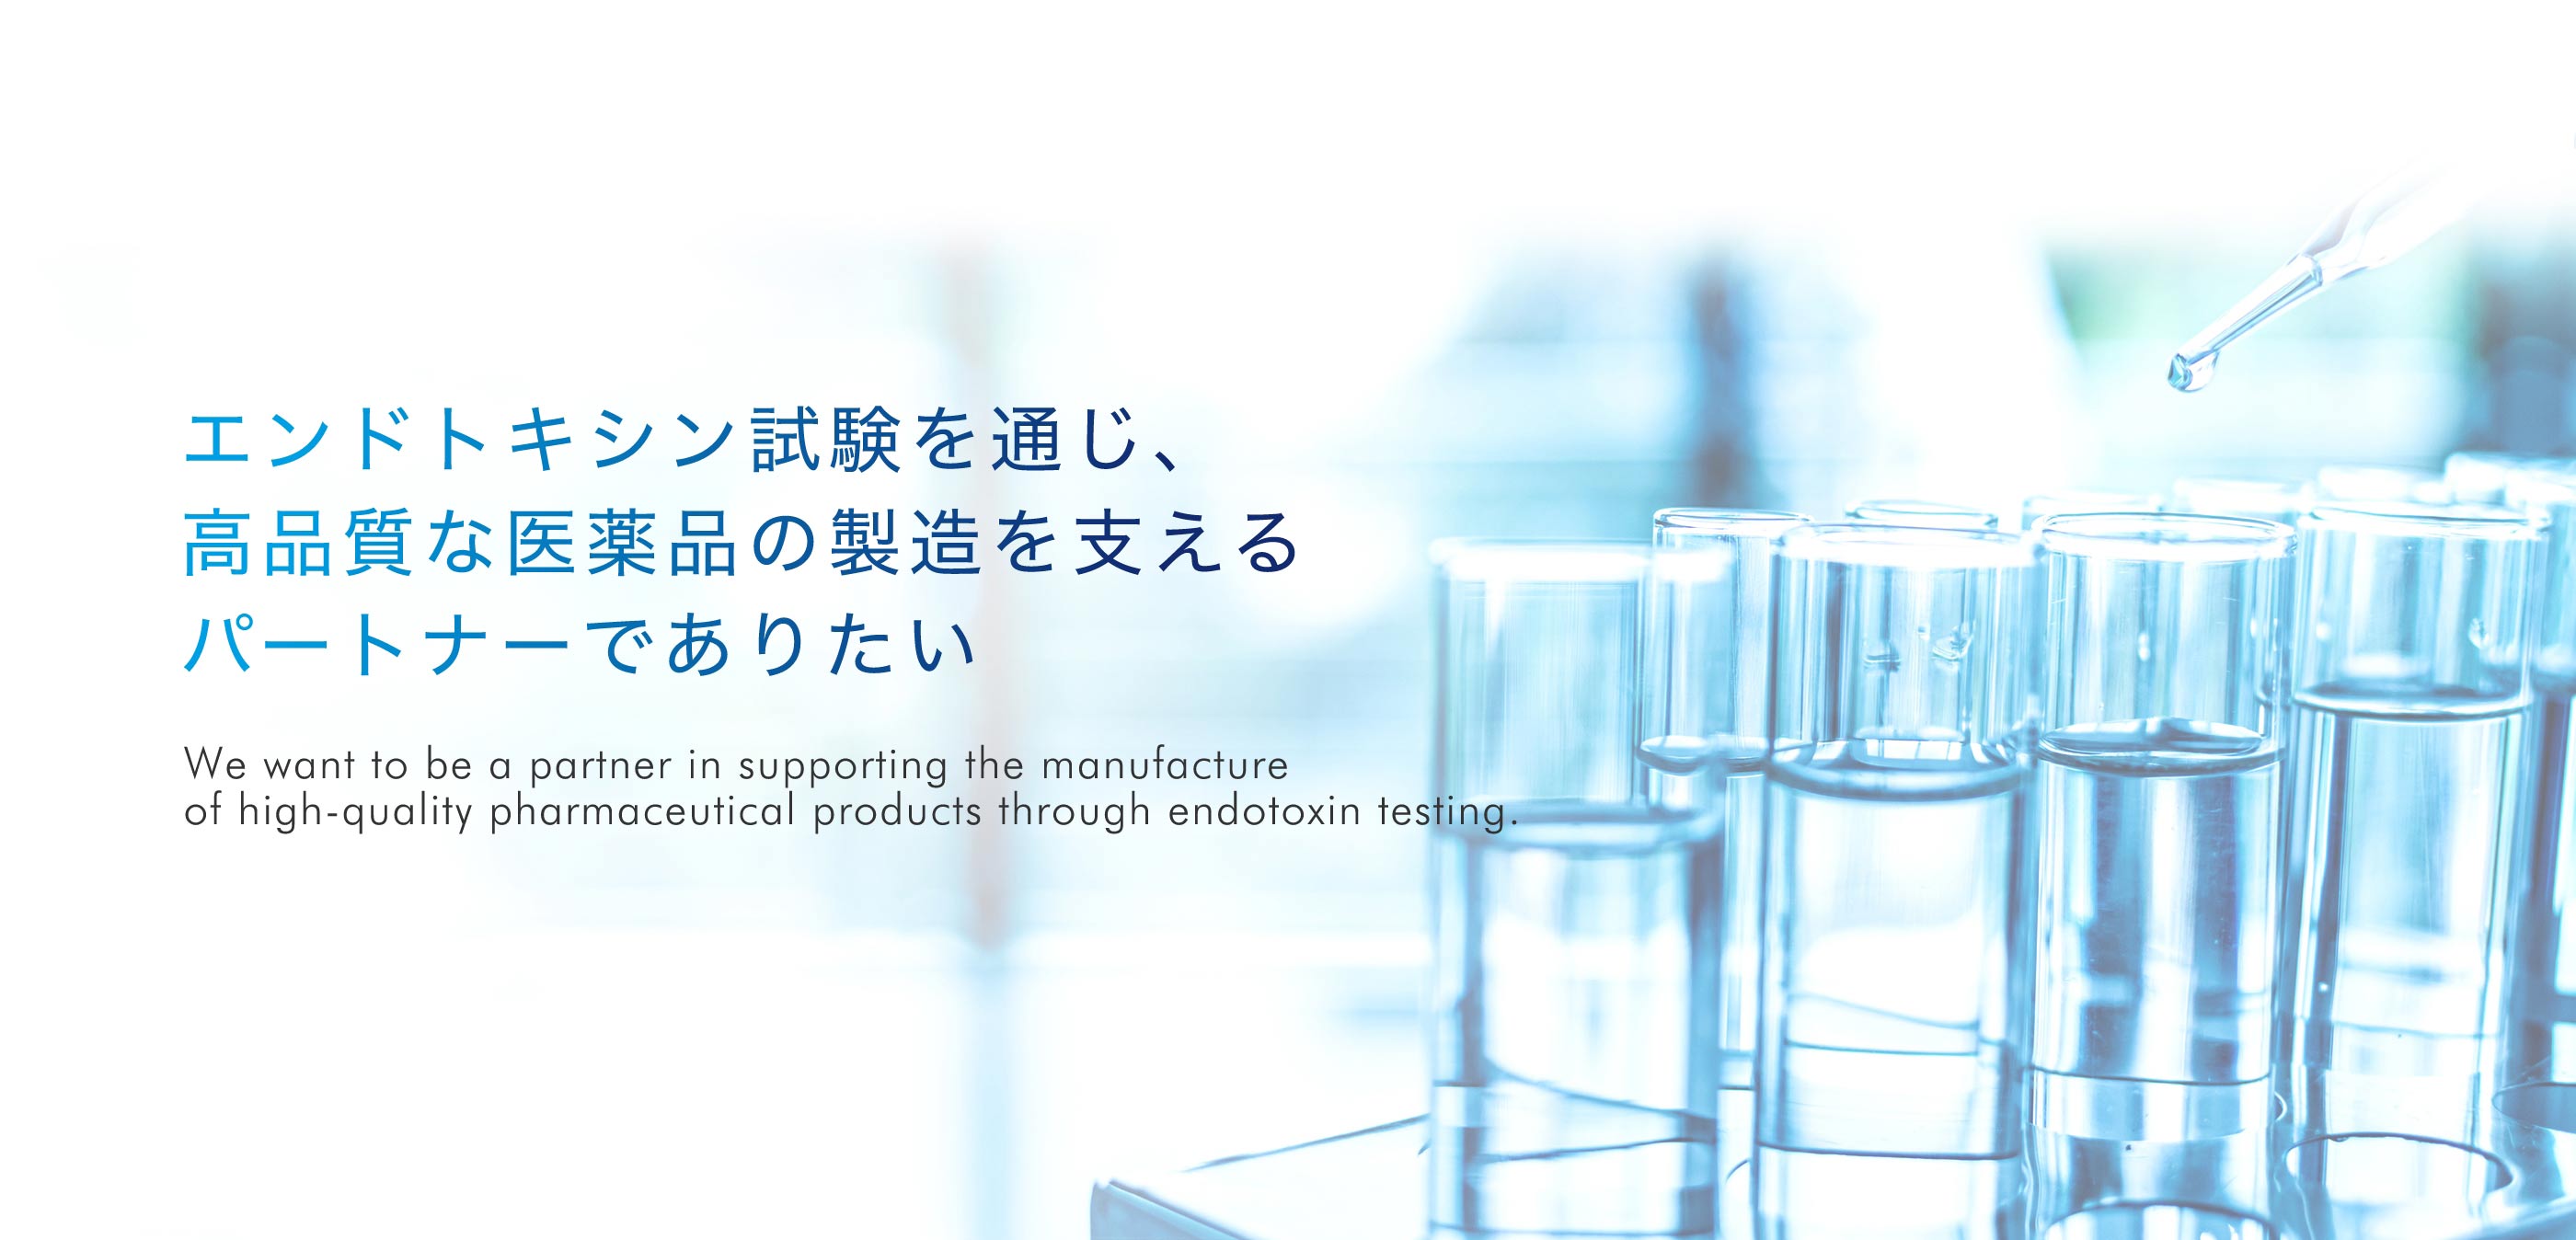 エンドトキシン試験を通じ、高品質な医薬品の製造を支えるパートナーでありたい。We want to be a partner in supporting the manufacture of high-quality pharmaceutical products through endotoxin testing.